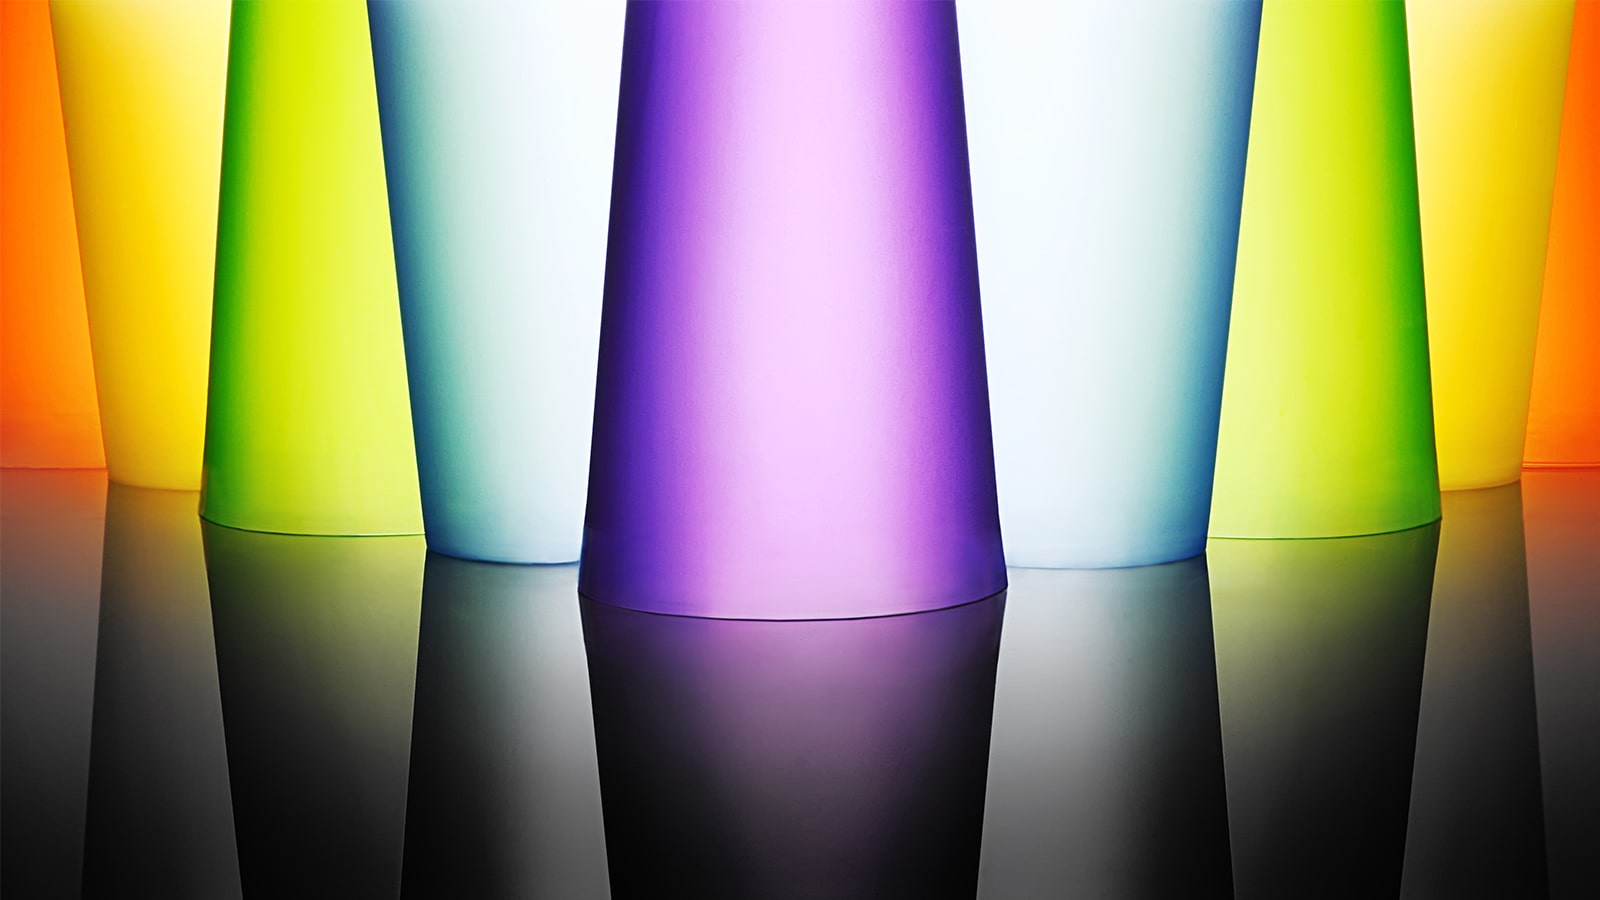 Une image de verres en cristal lumineux et colorés.